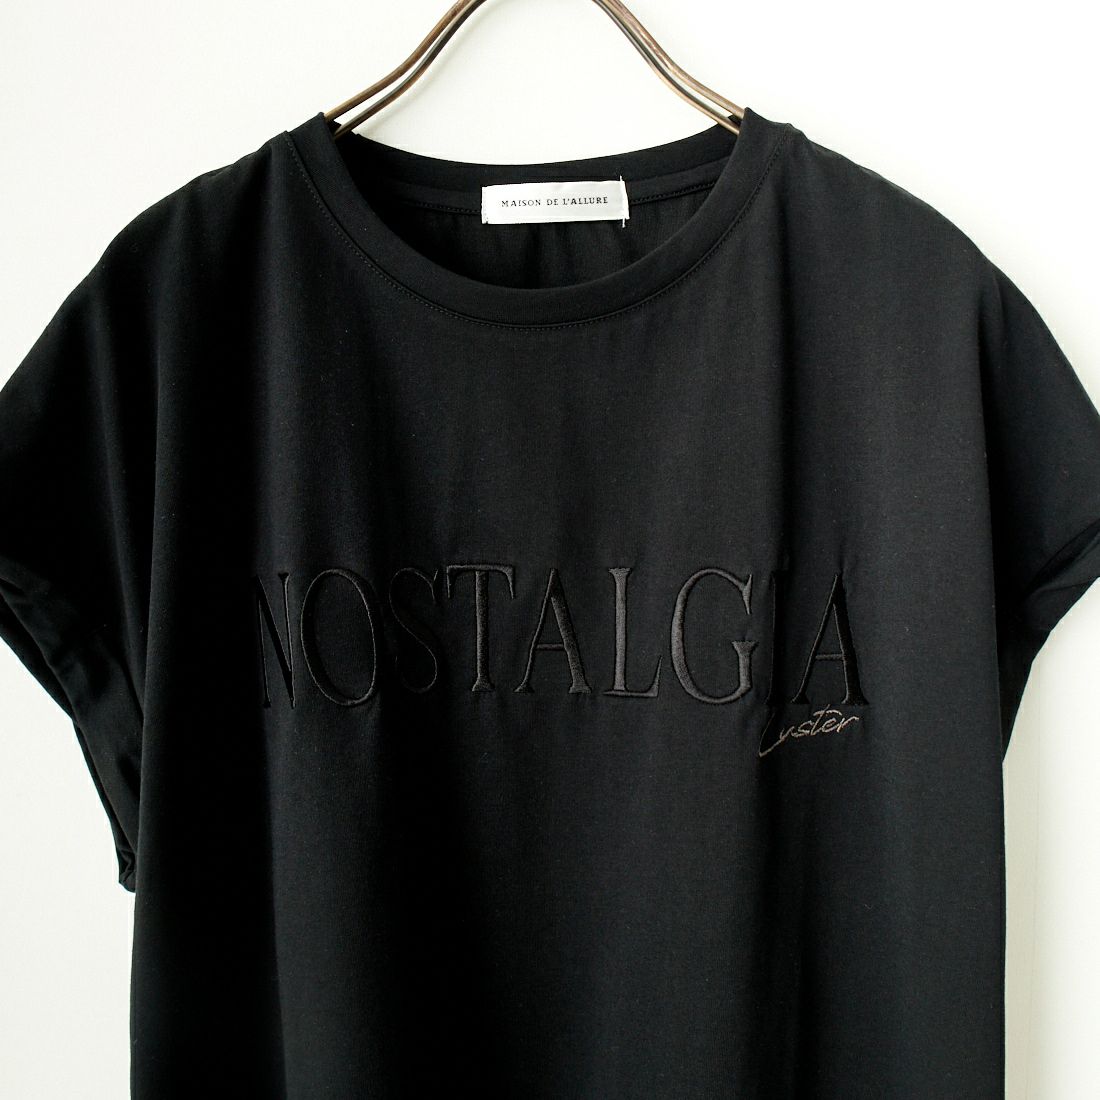 Maison de L'allure [メゾン ドゥ ラリュール] 捻りフレンチスリーブ ロゴ刺繍Tシャツ [24112016] 09 BLACK